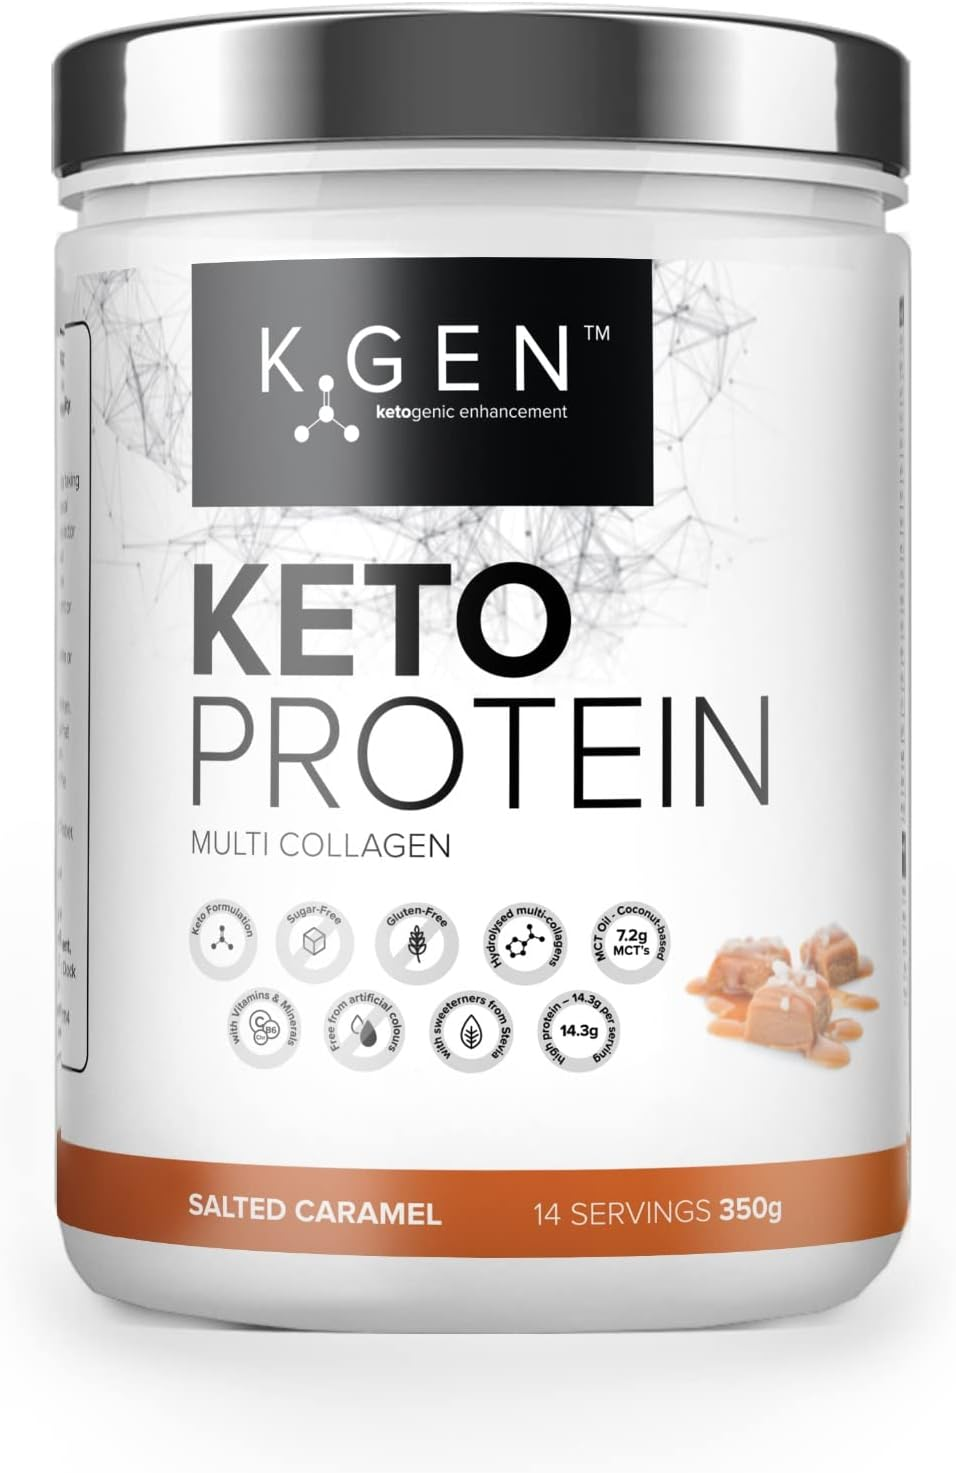 K-GEN™ Keto Collagen Protein Powder